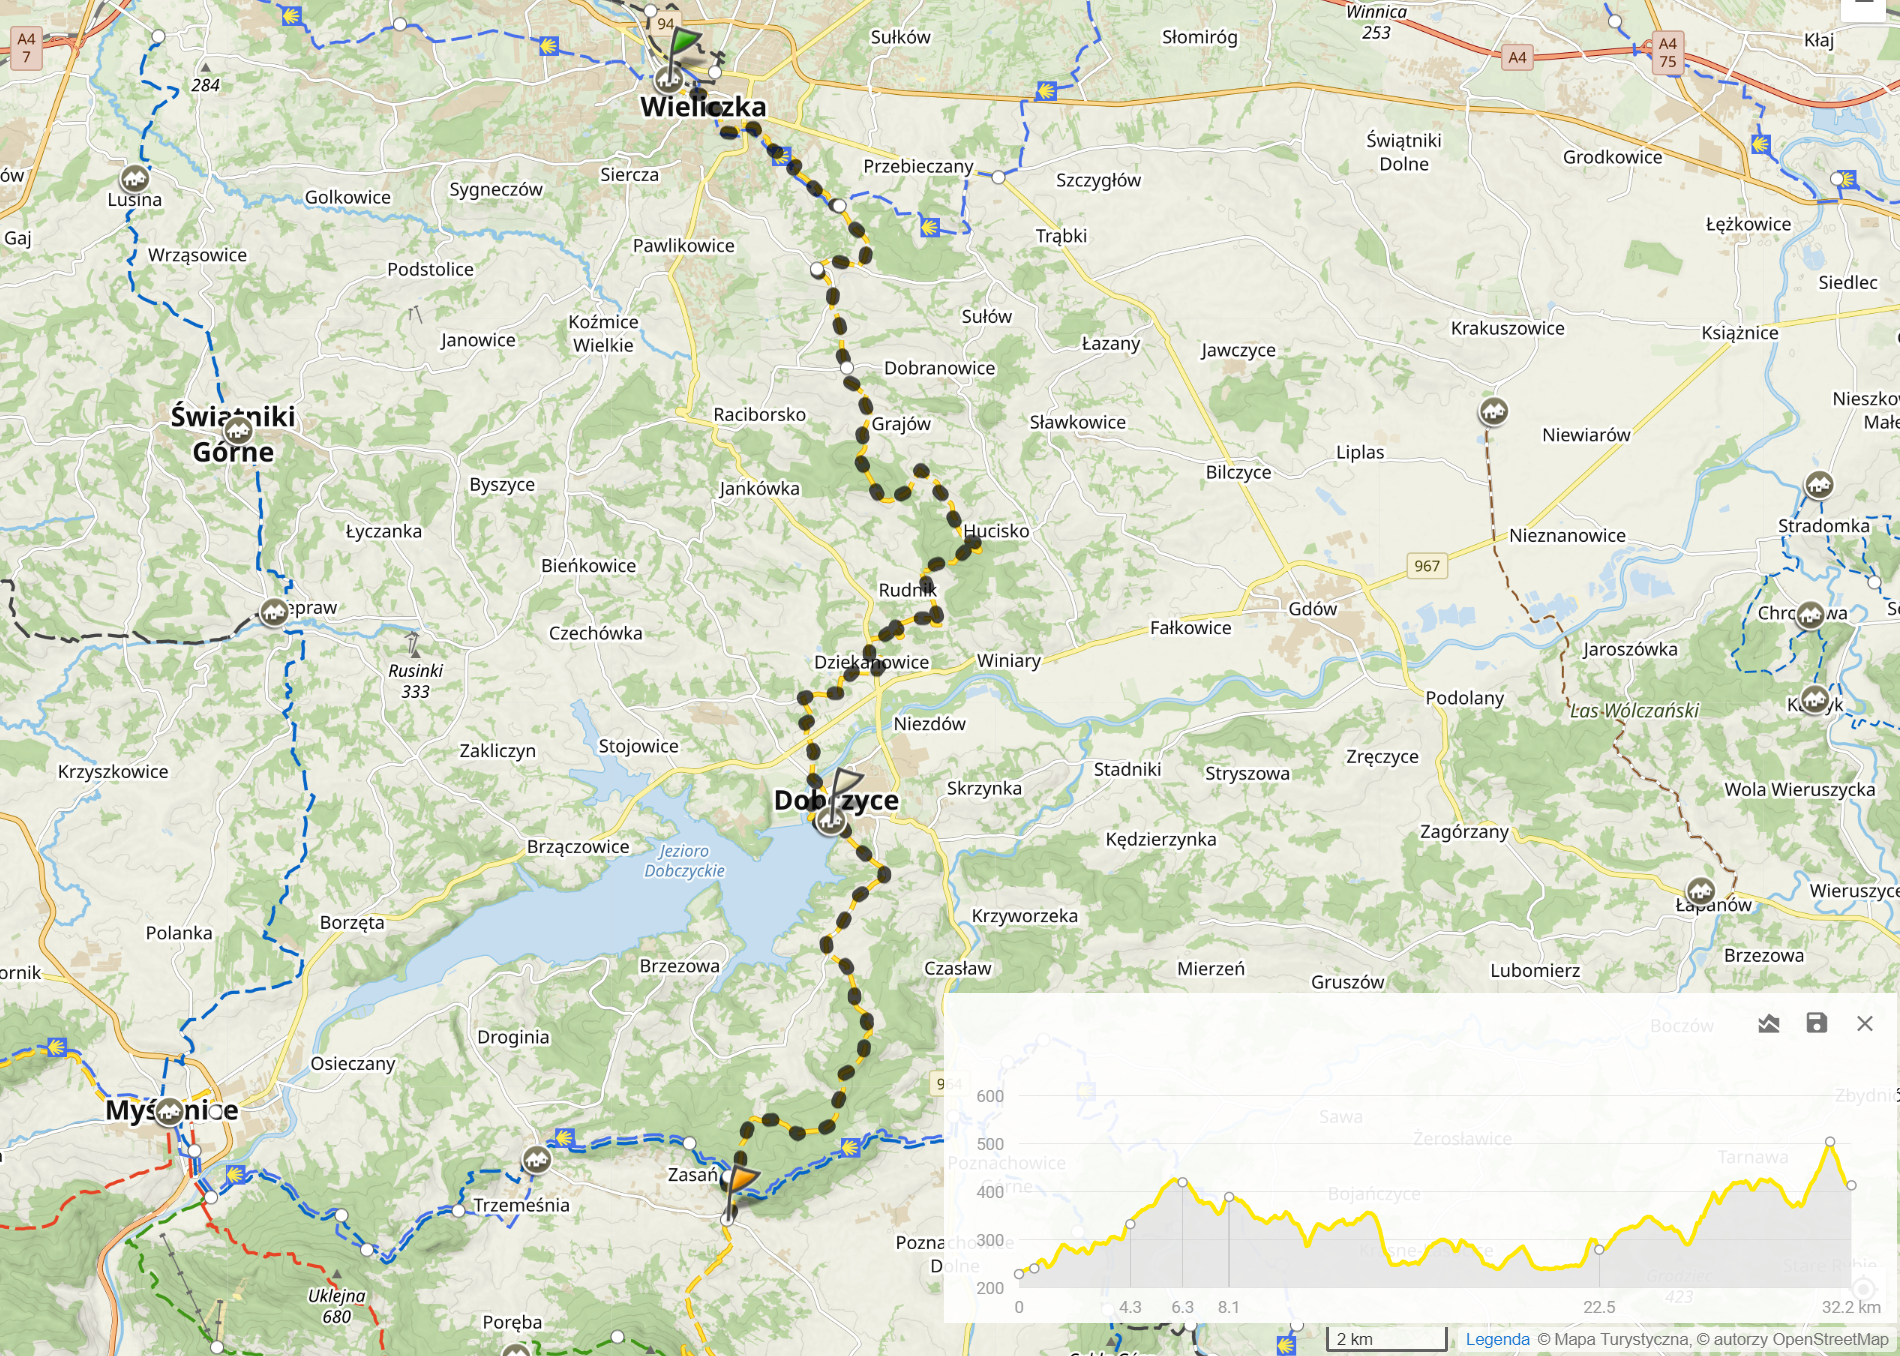 Żółty szlak Wieliczka - pod Beskidami. Dzień 1: Wieliczka - Zasań (32,2km, 993m podejść)